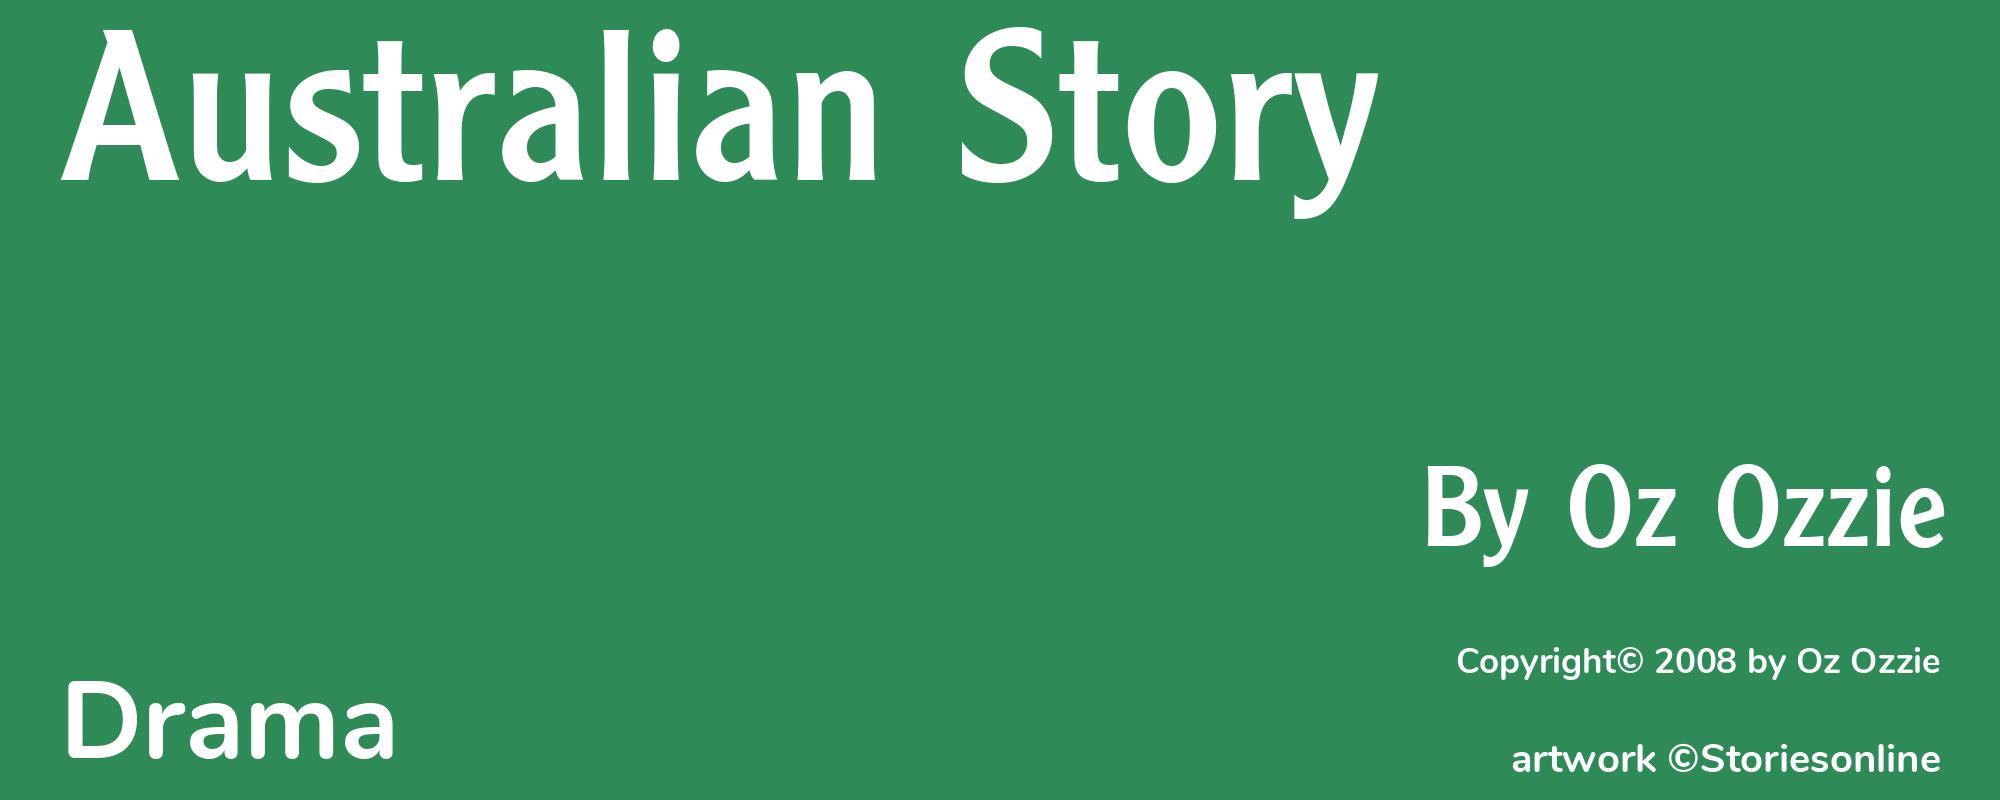 Australian Story - Cover